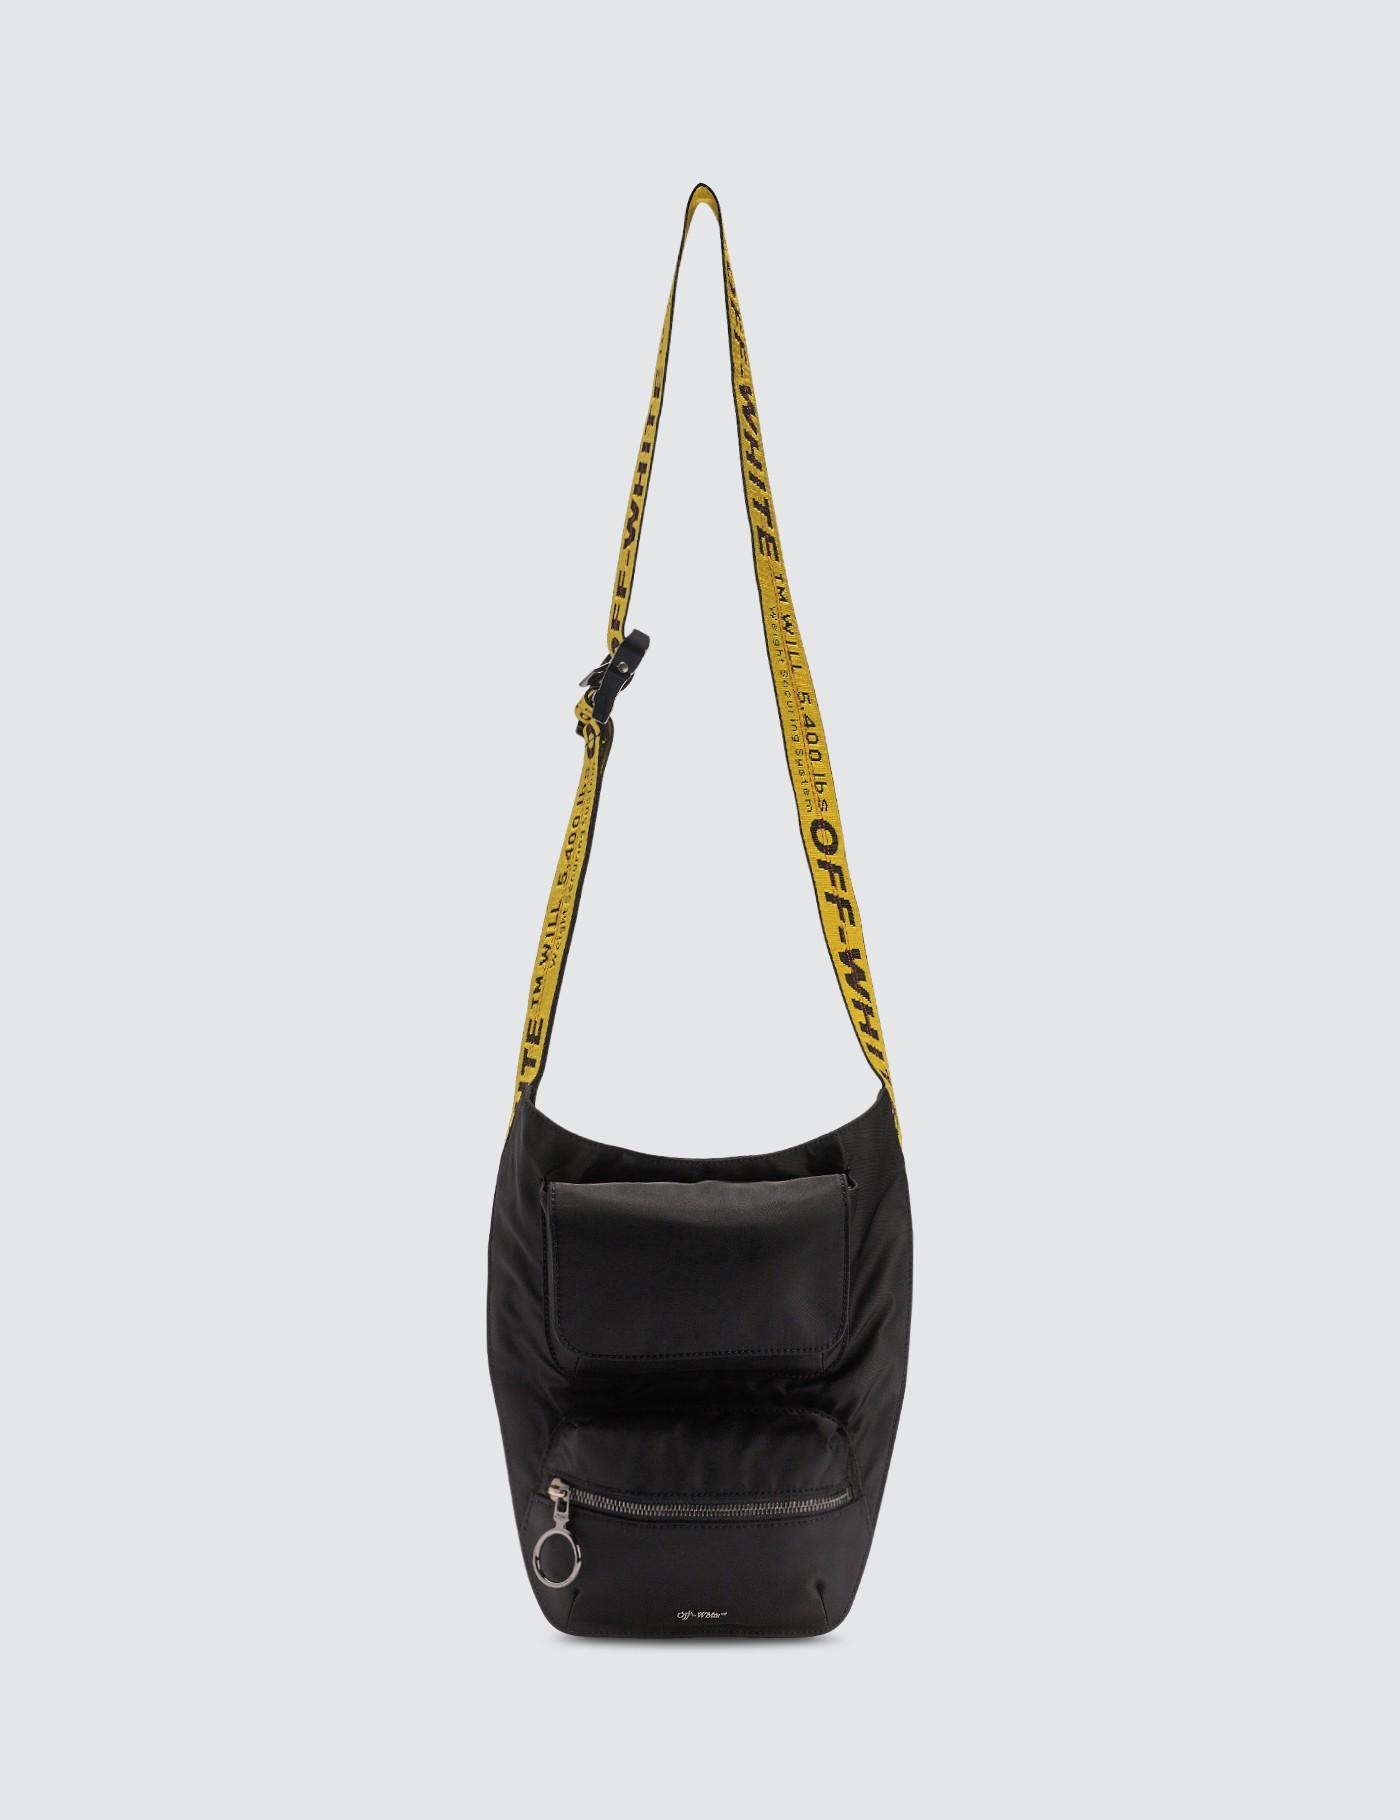 Off-White c/o Virgil Abloh Synthetic Crossbody Bag in Black for Men - Lyst